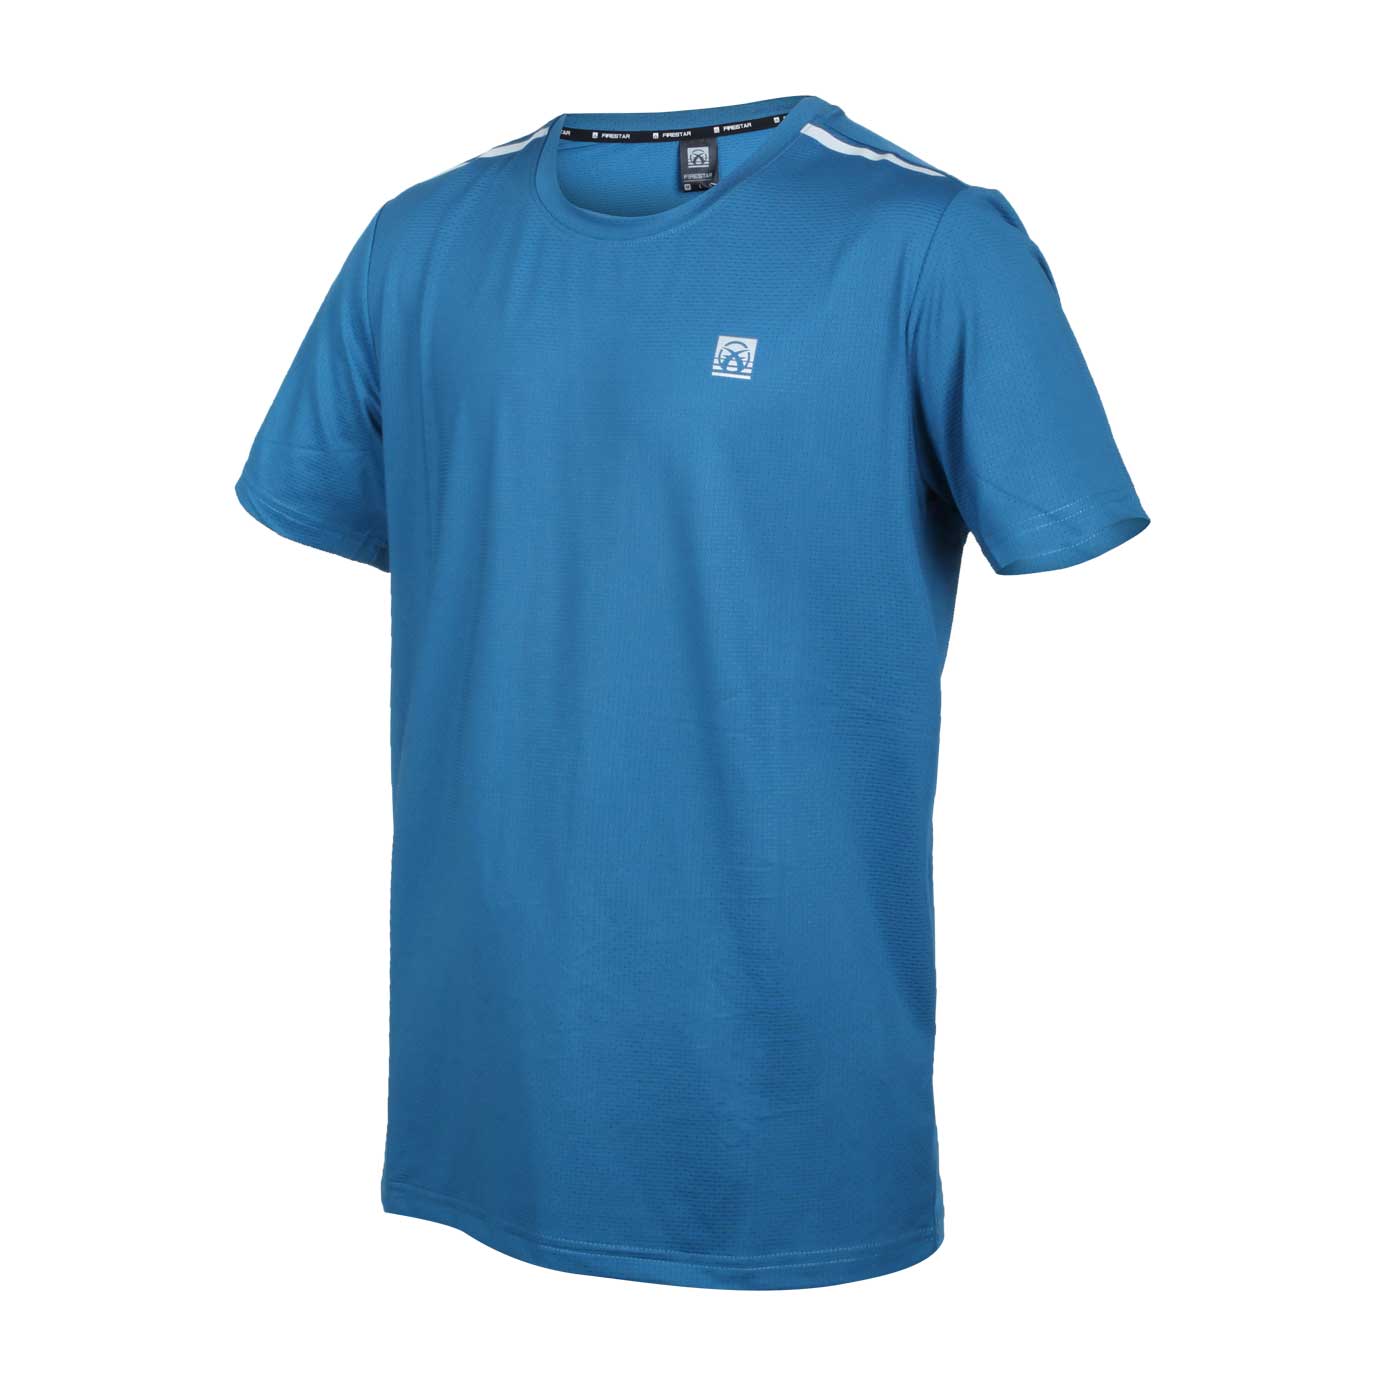 FIRESTAR 男款彈性機能圓領短袖T恤 D2031-98 - 藍銀